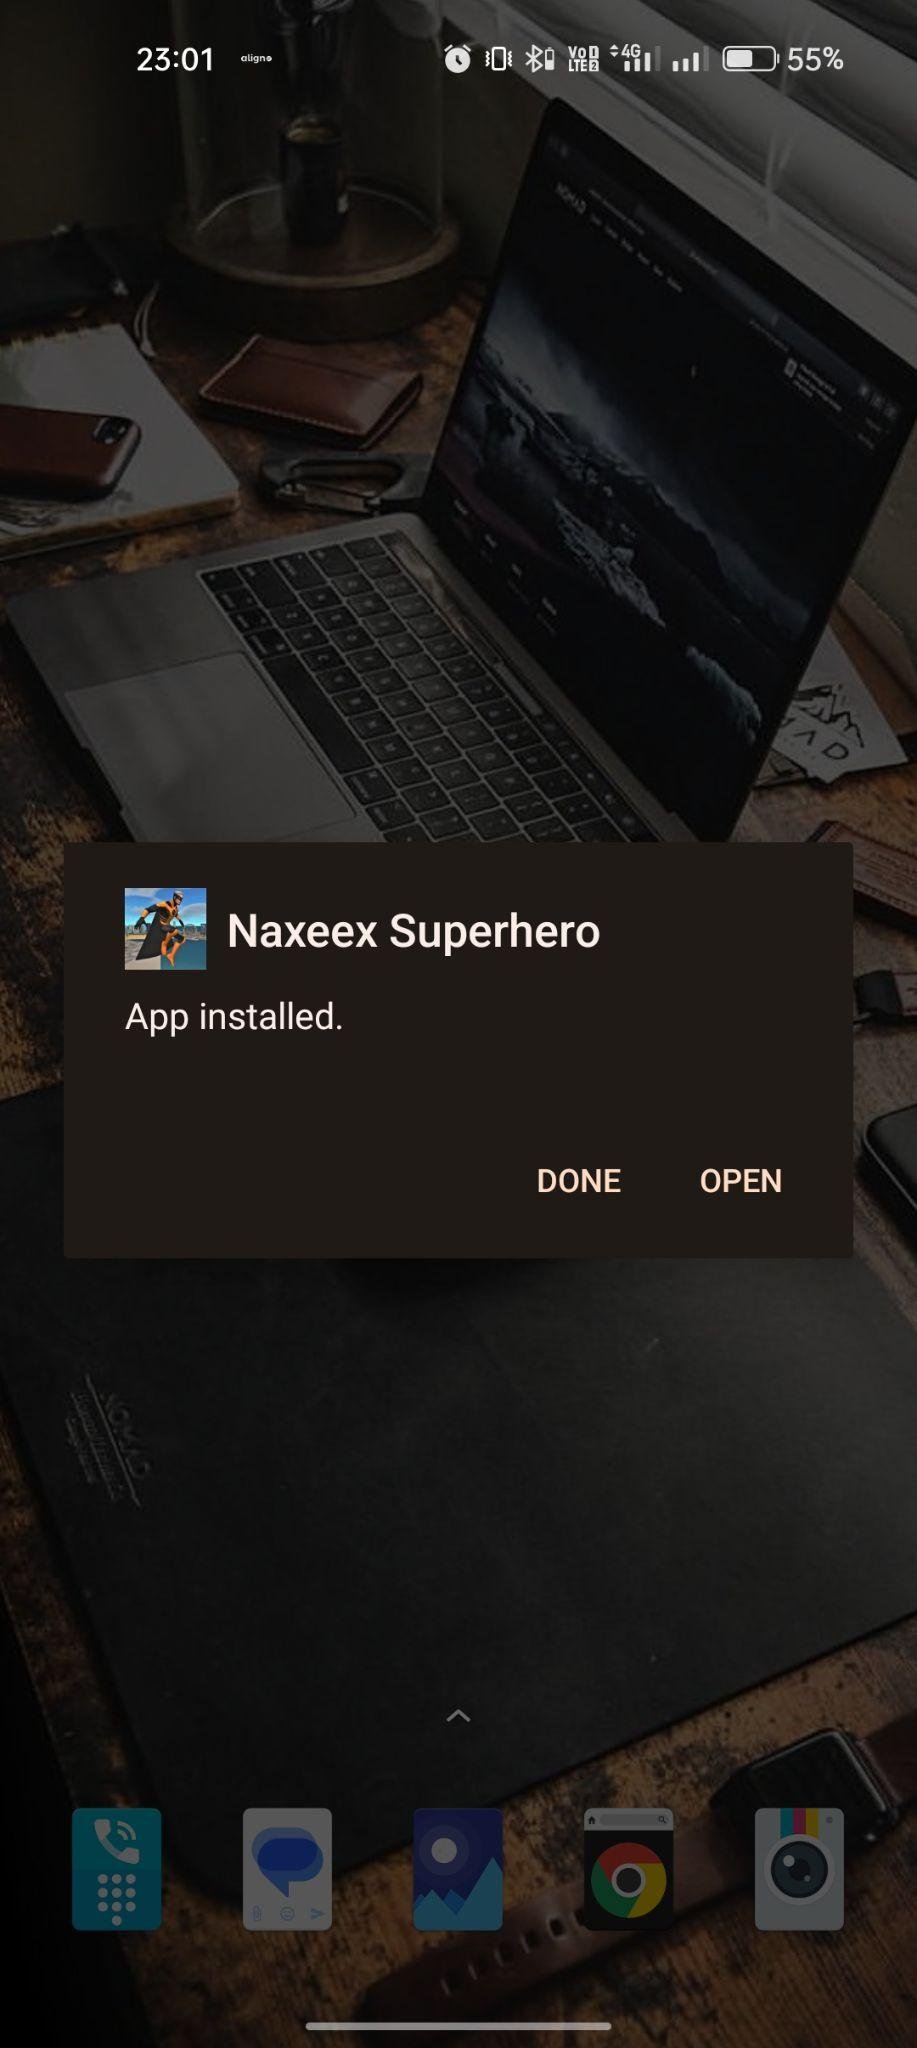 Naxeex Super Hero apk installed